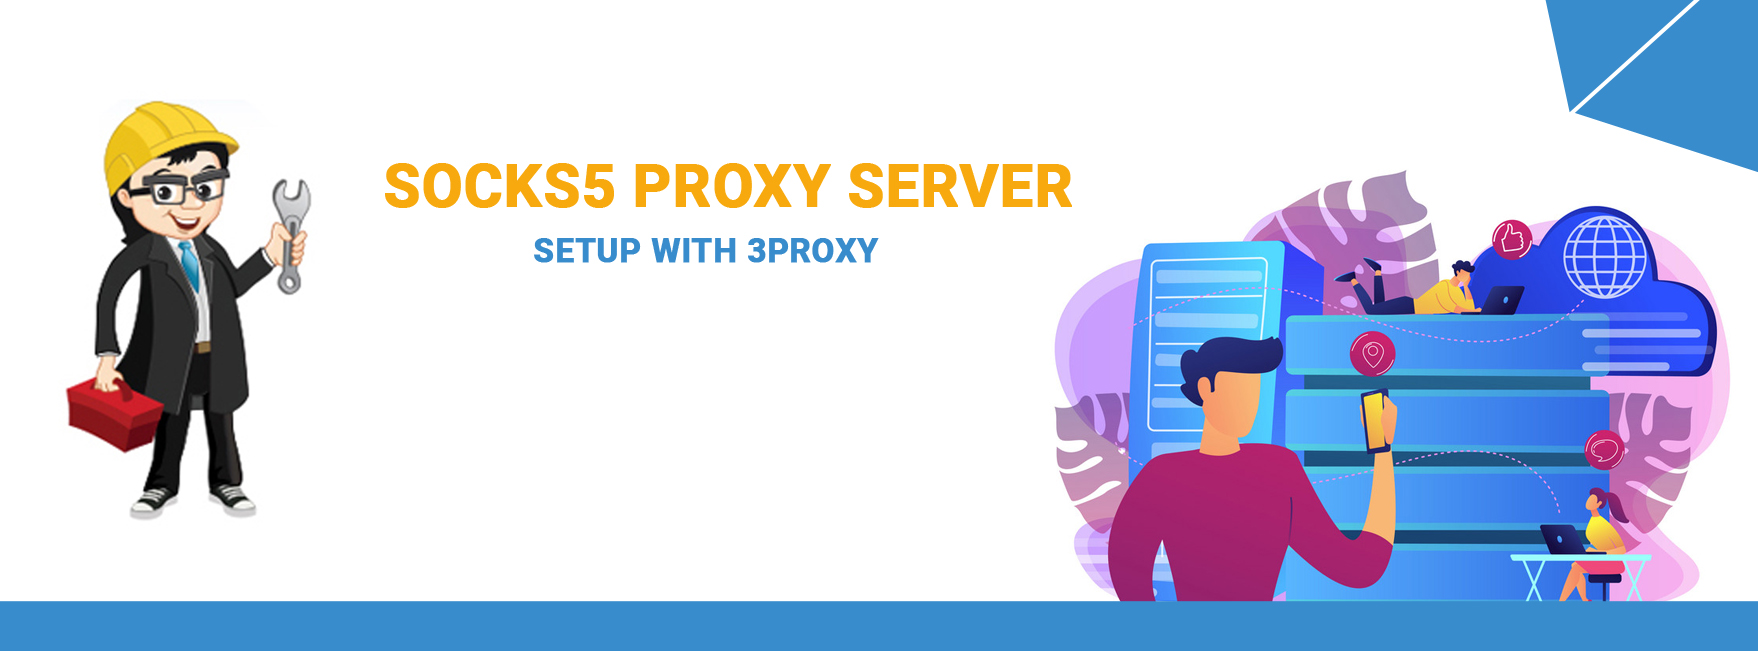 Socks5 proxy server setup with 3proxy